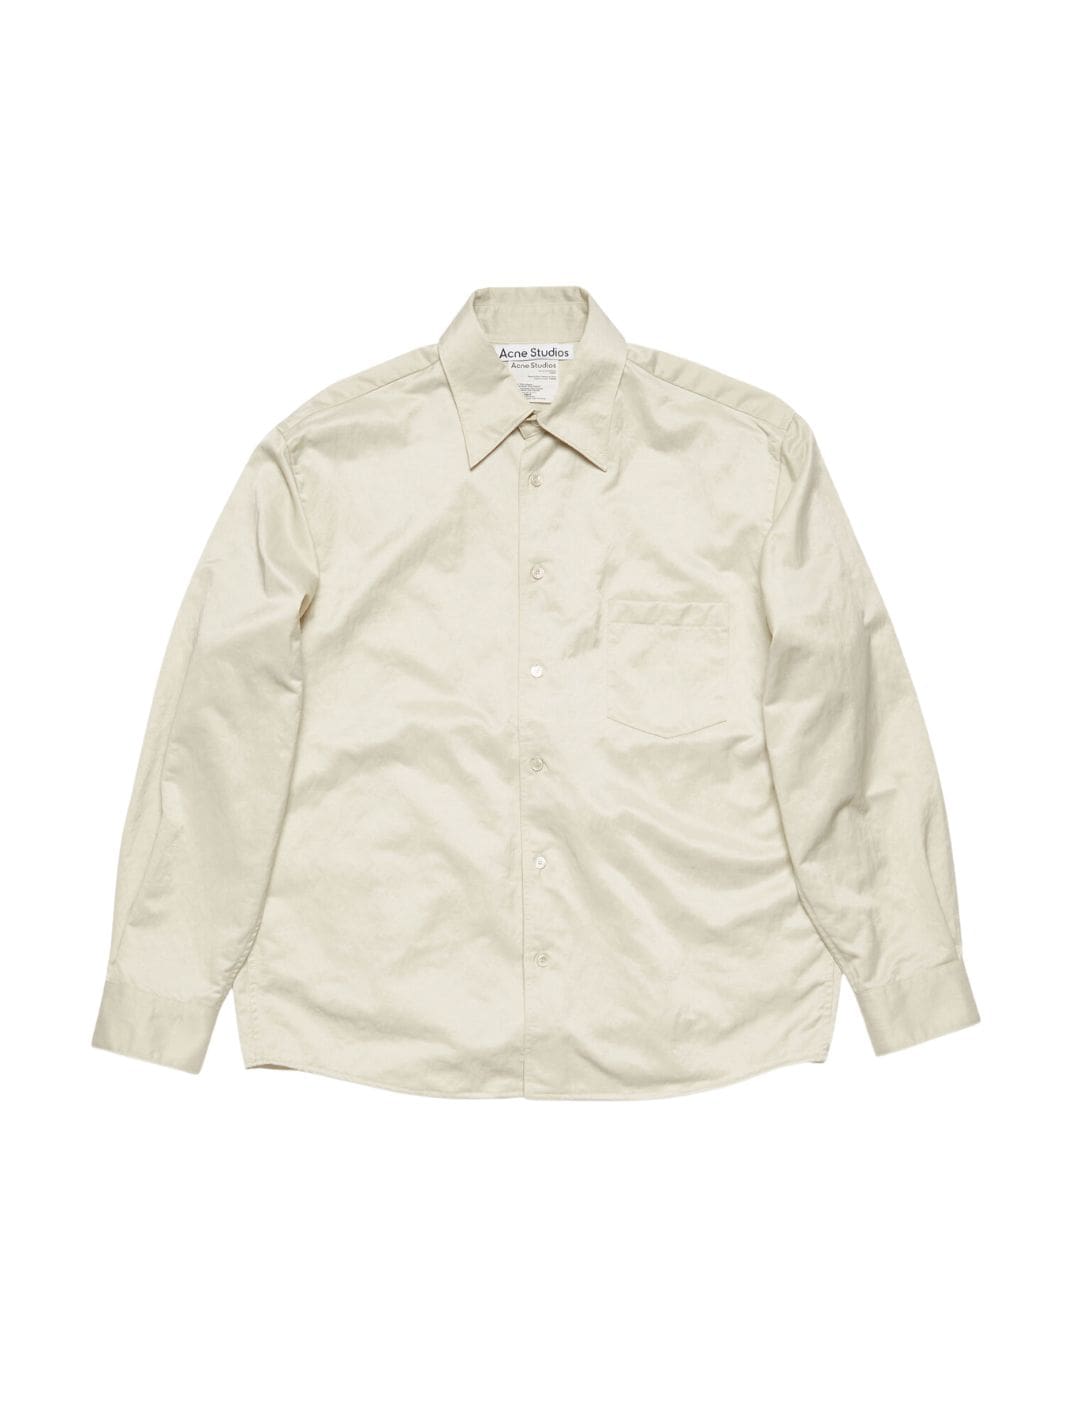 Acne Studios Shirts Skjortejakke | Nylon Overshirt Ivory White